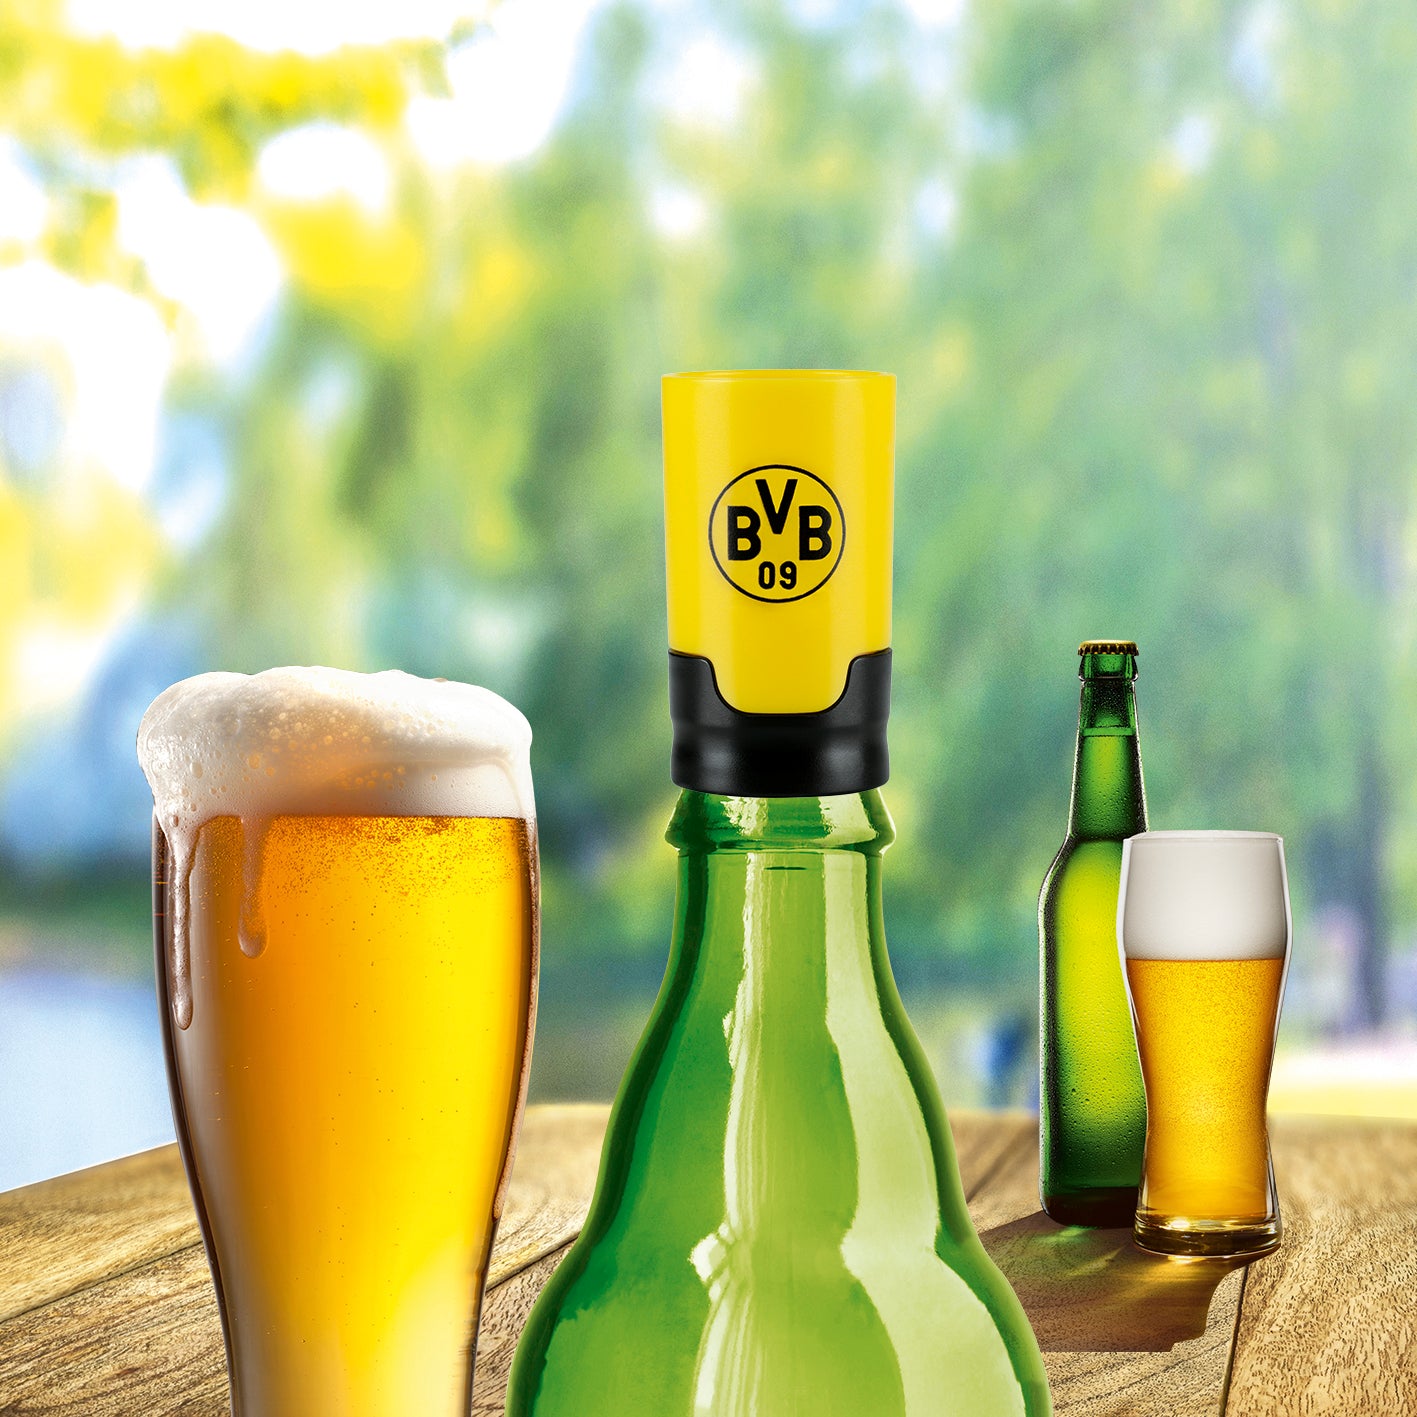 Bier-Aufbereiter im BVB-Design